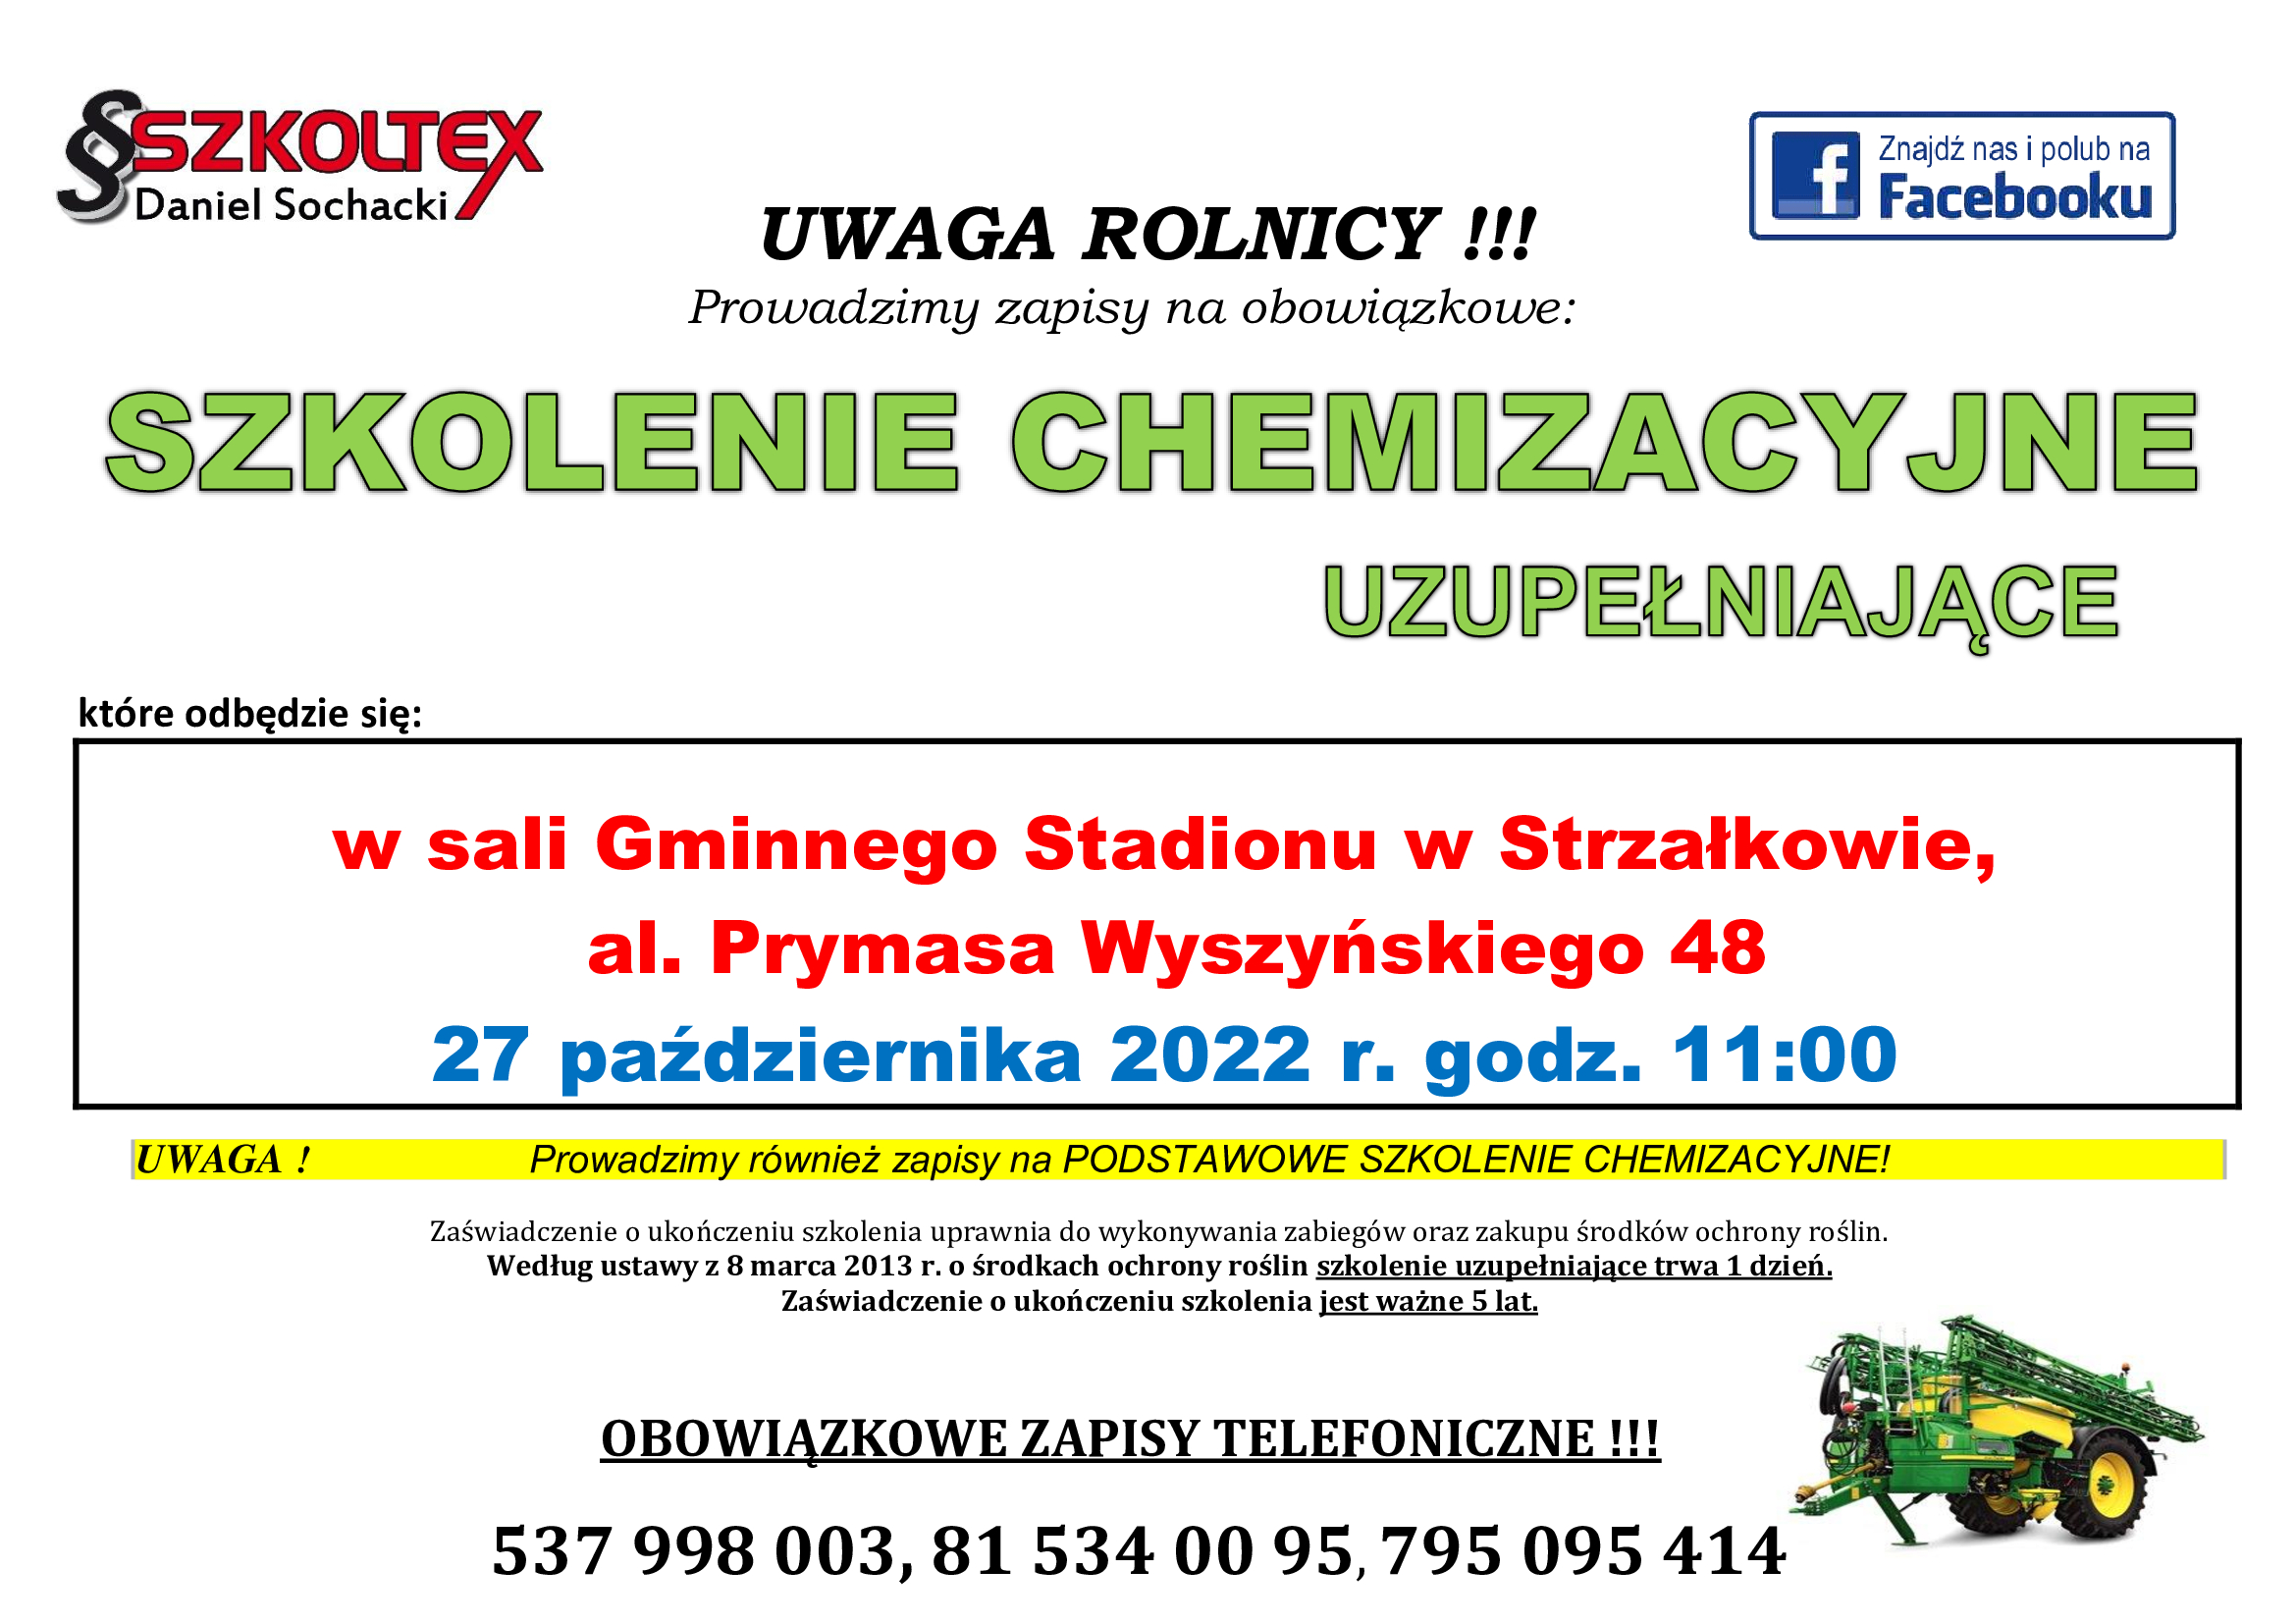 Plakat dotyczący szkolenia chemizacyjnego